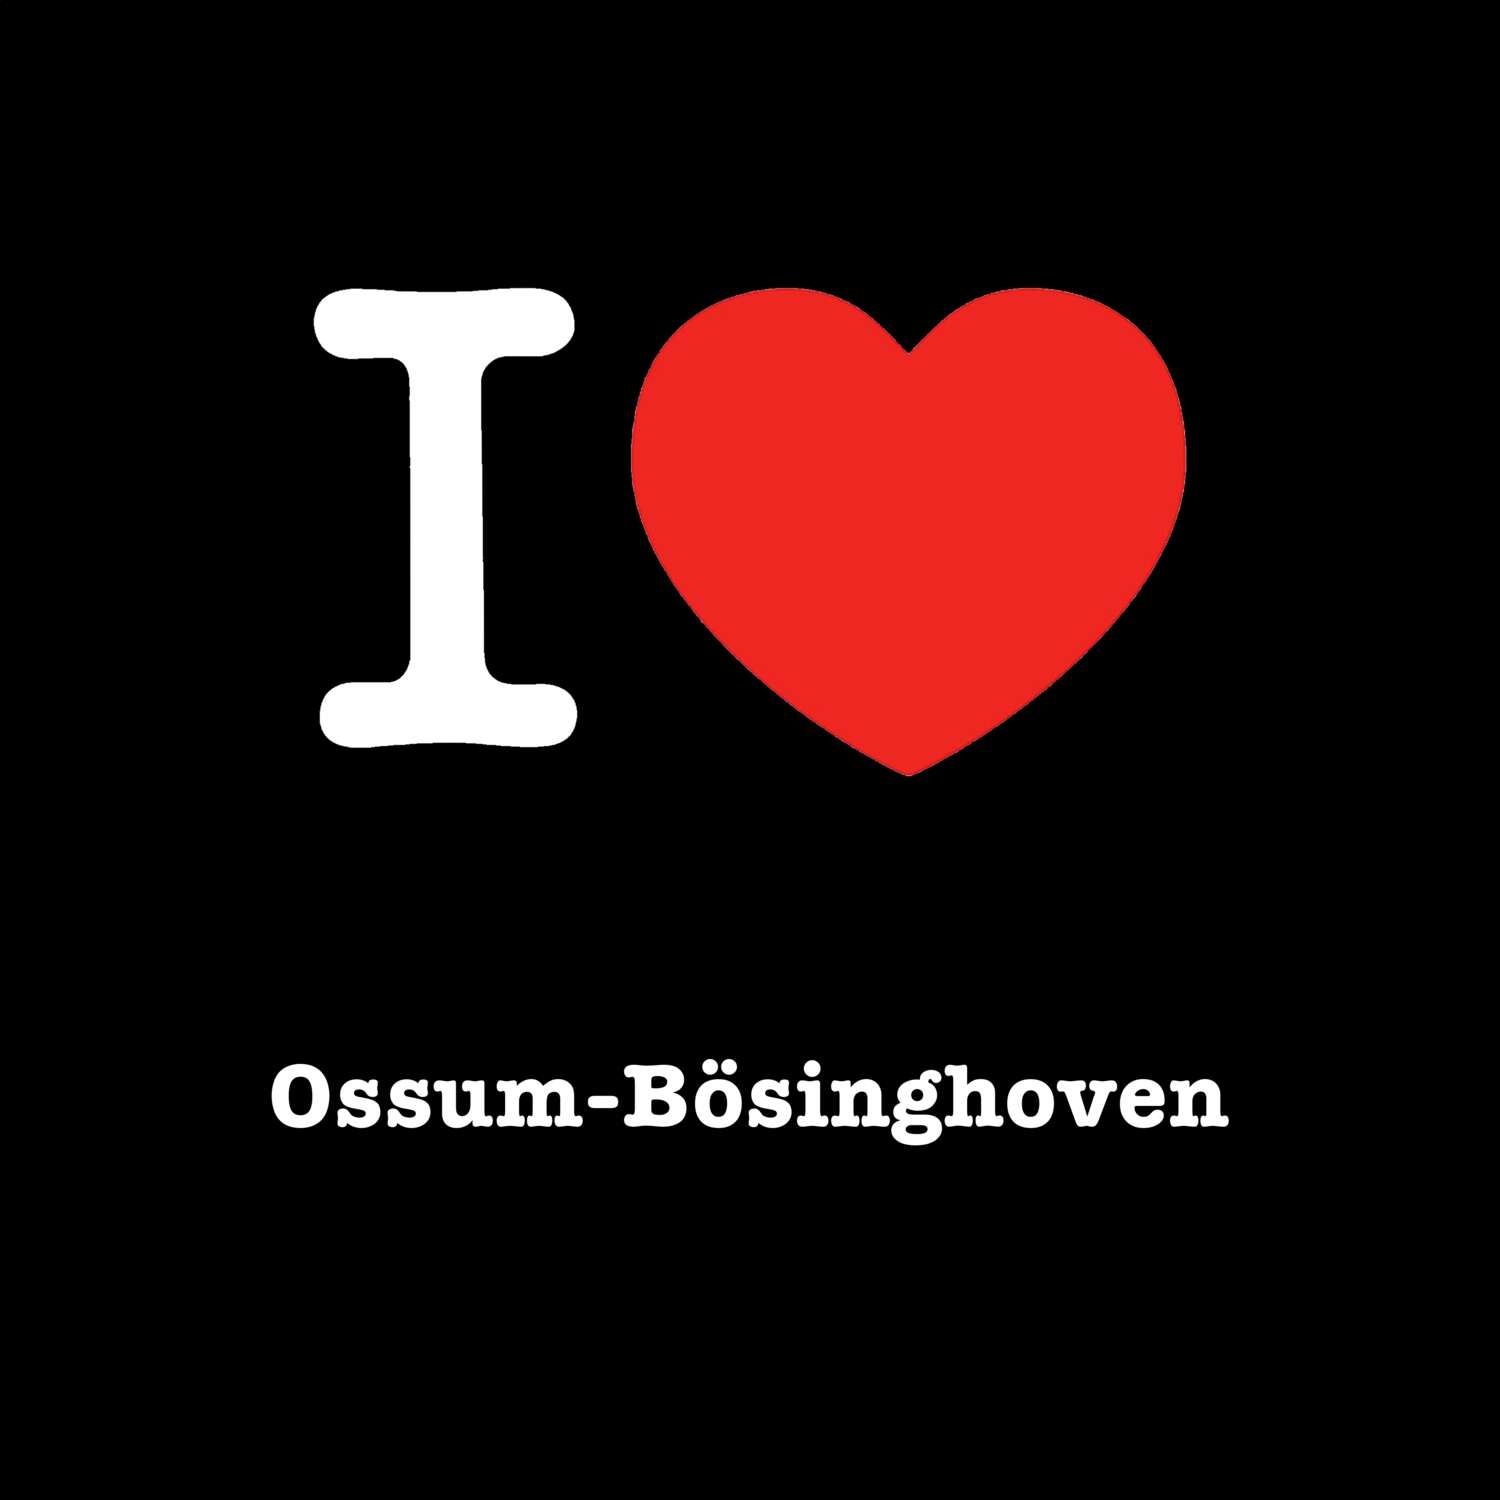 Ossum-Bösinghoven T-Shirt »I love«